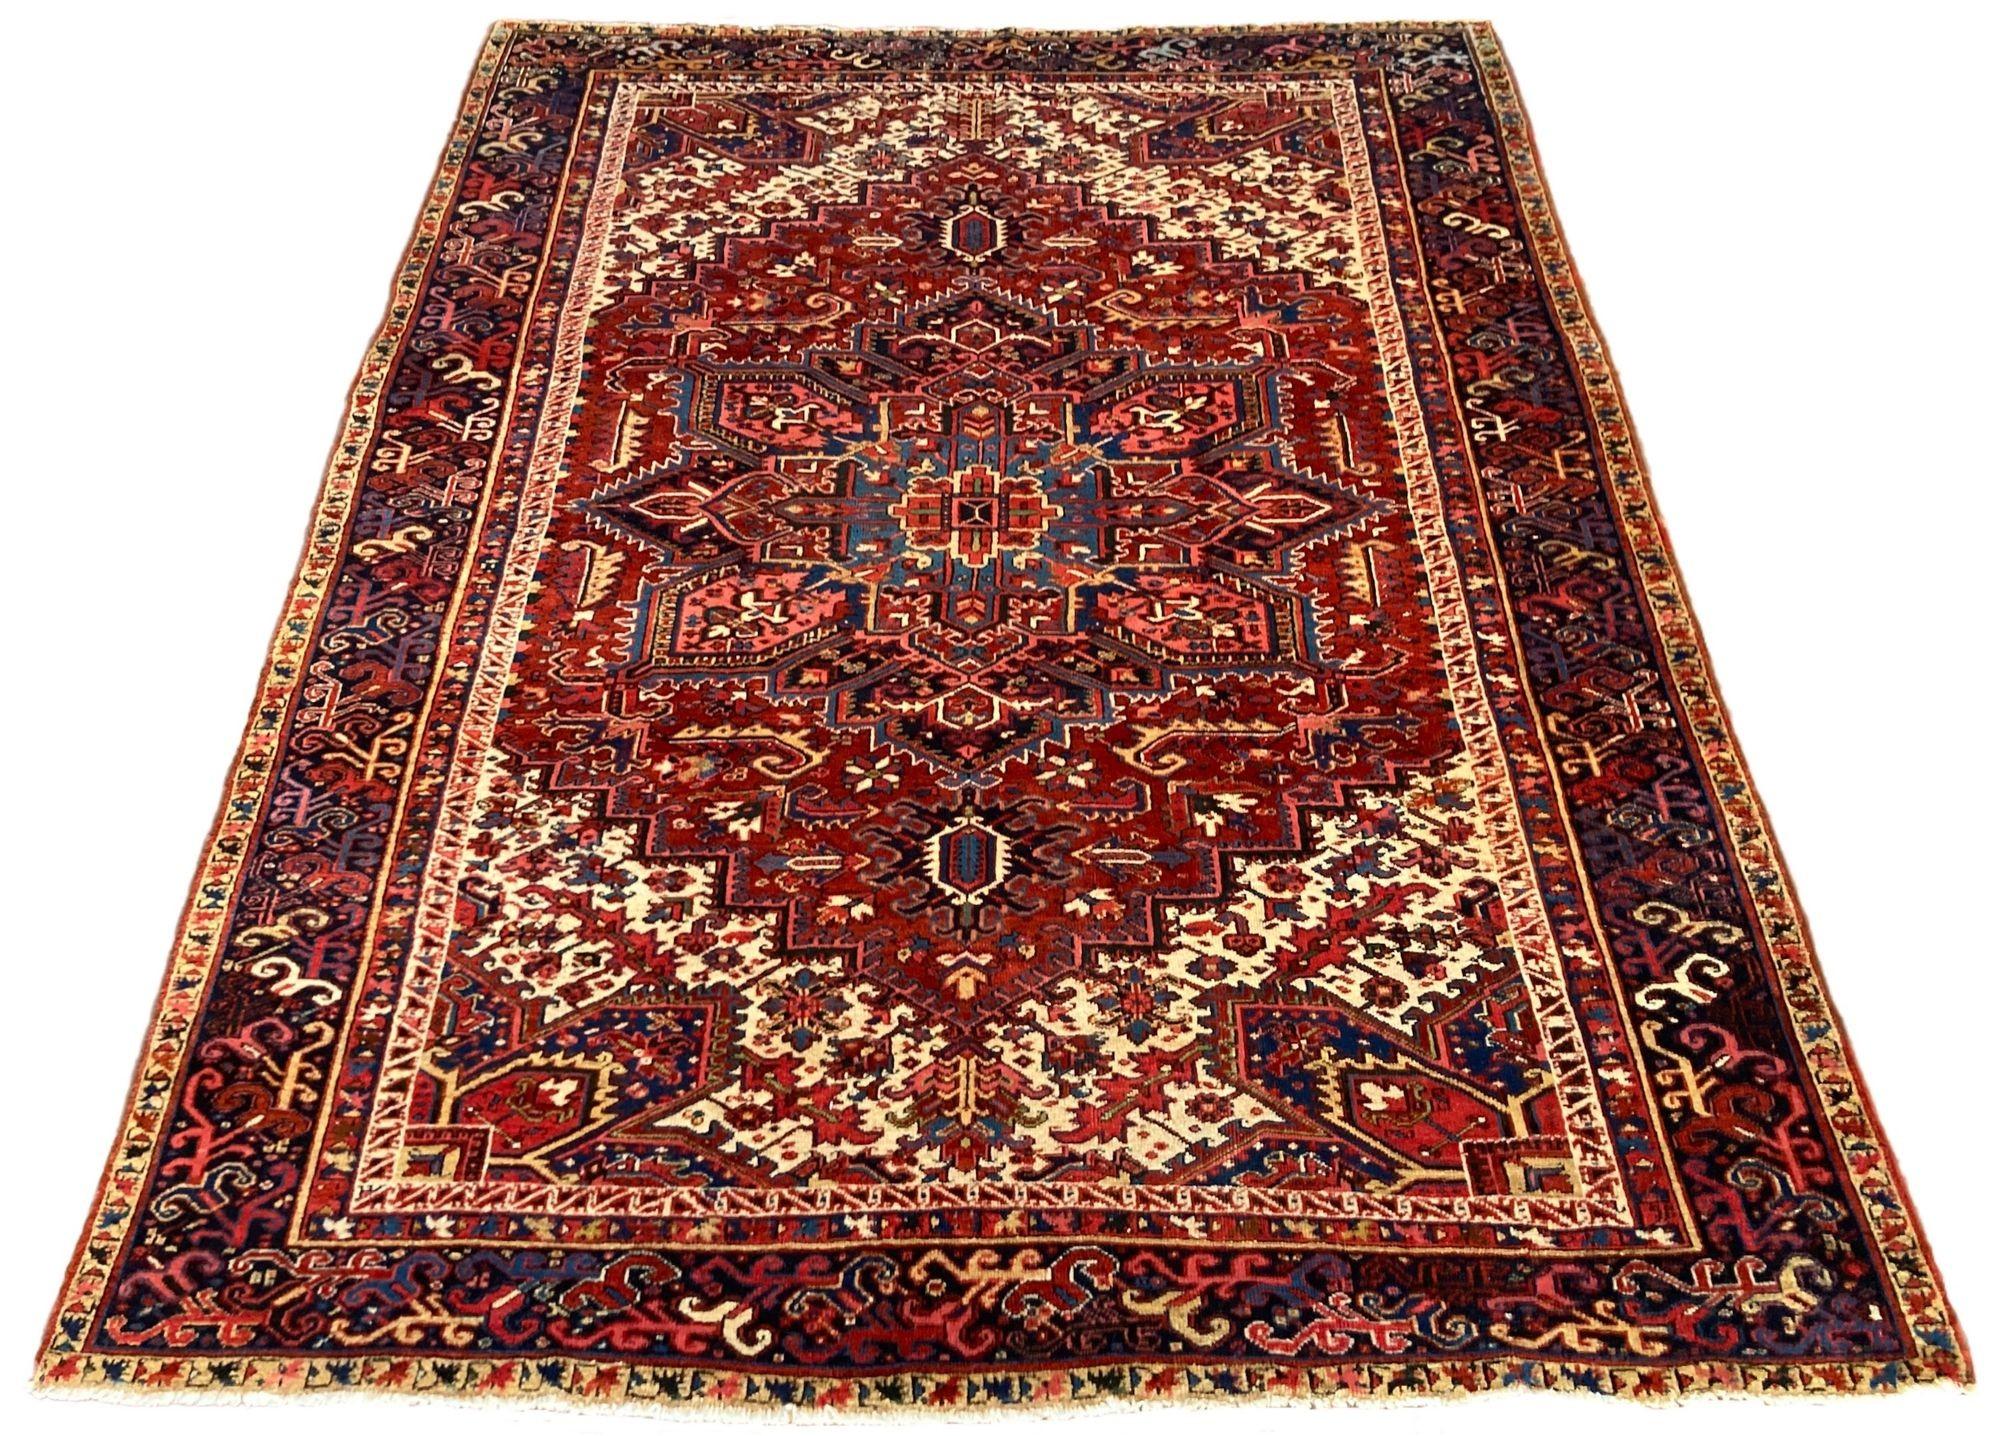 Ein fabelhafter antiker Heriz-Teppich, handgeknüpft um 1910 mit einem traditionellen geometrischen Muster auf einem Terrakotta-Feld und einer tiefen indigoblauen Bordüre. Einige interessante Designelemente, darunter ein hübsches Bordürenmuster und